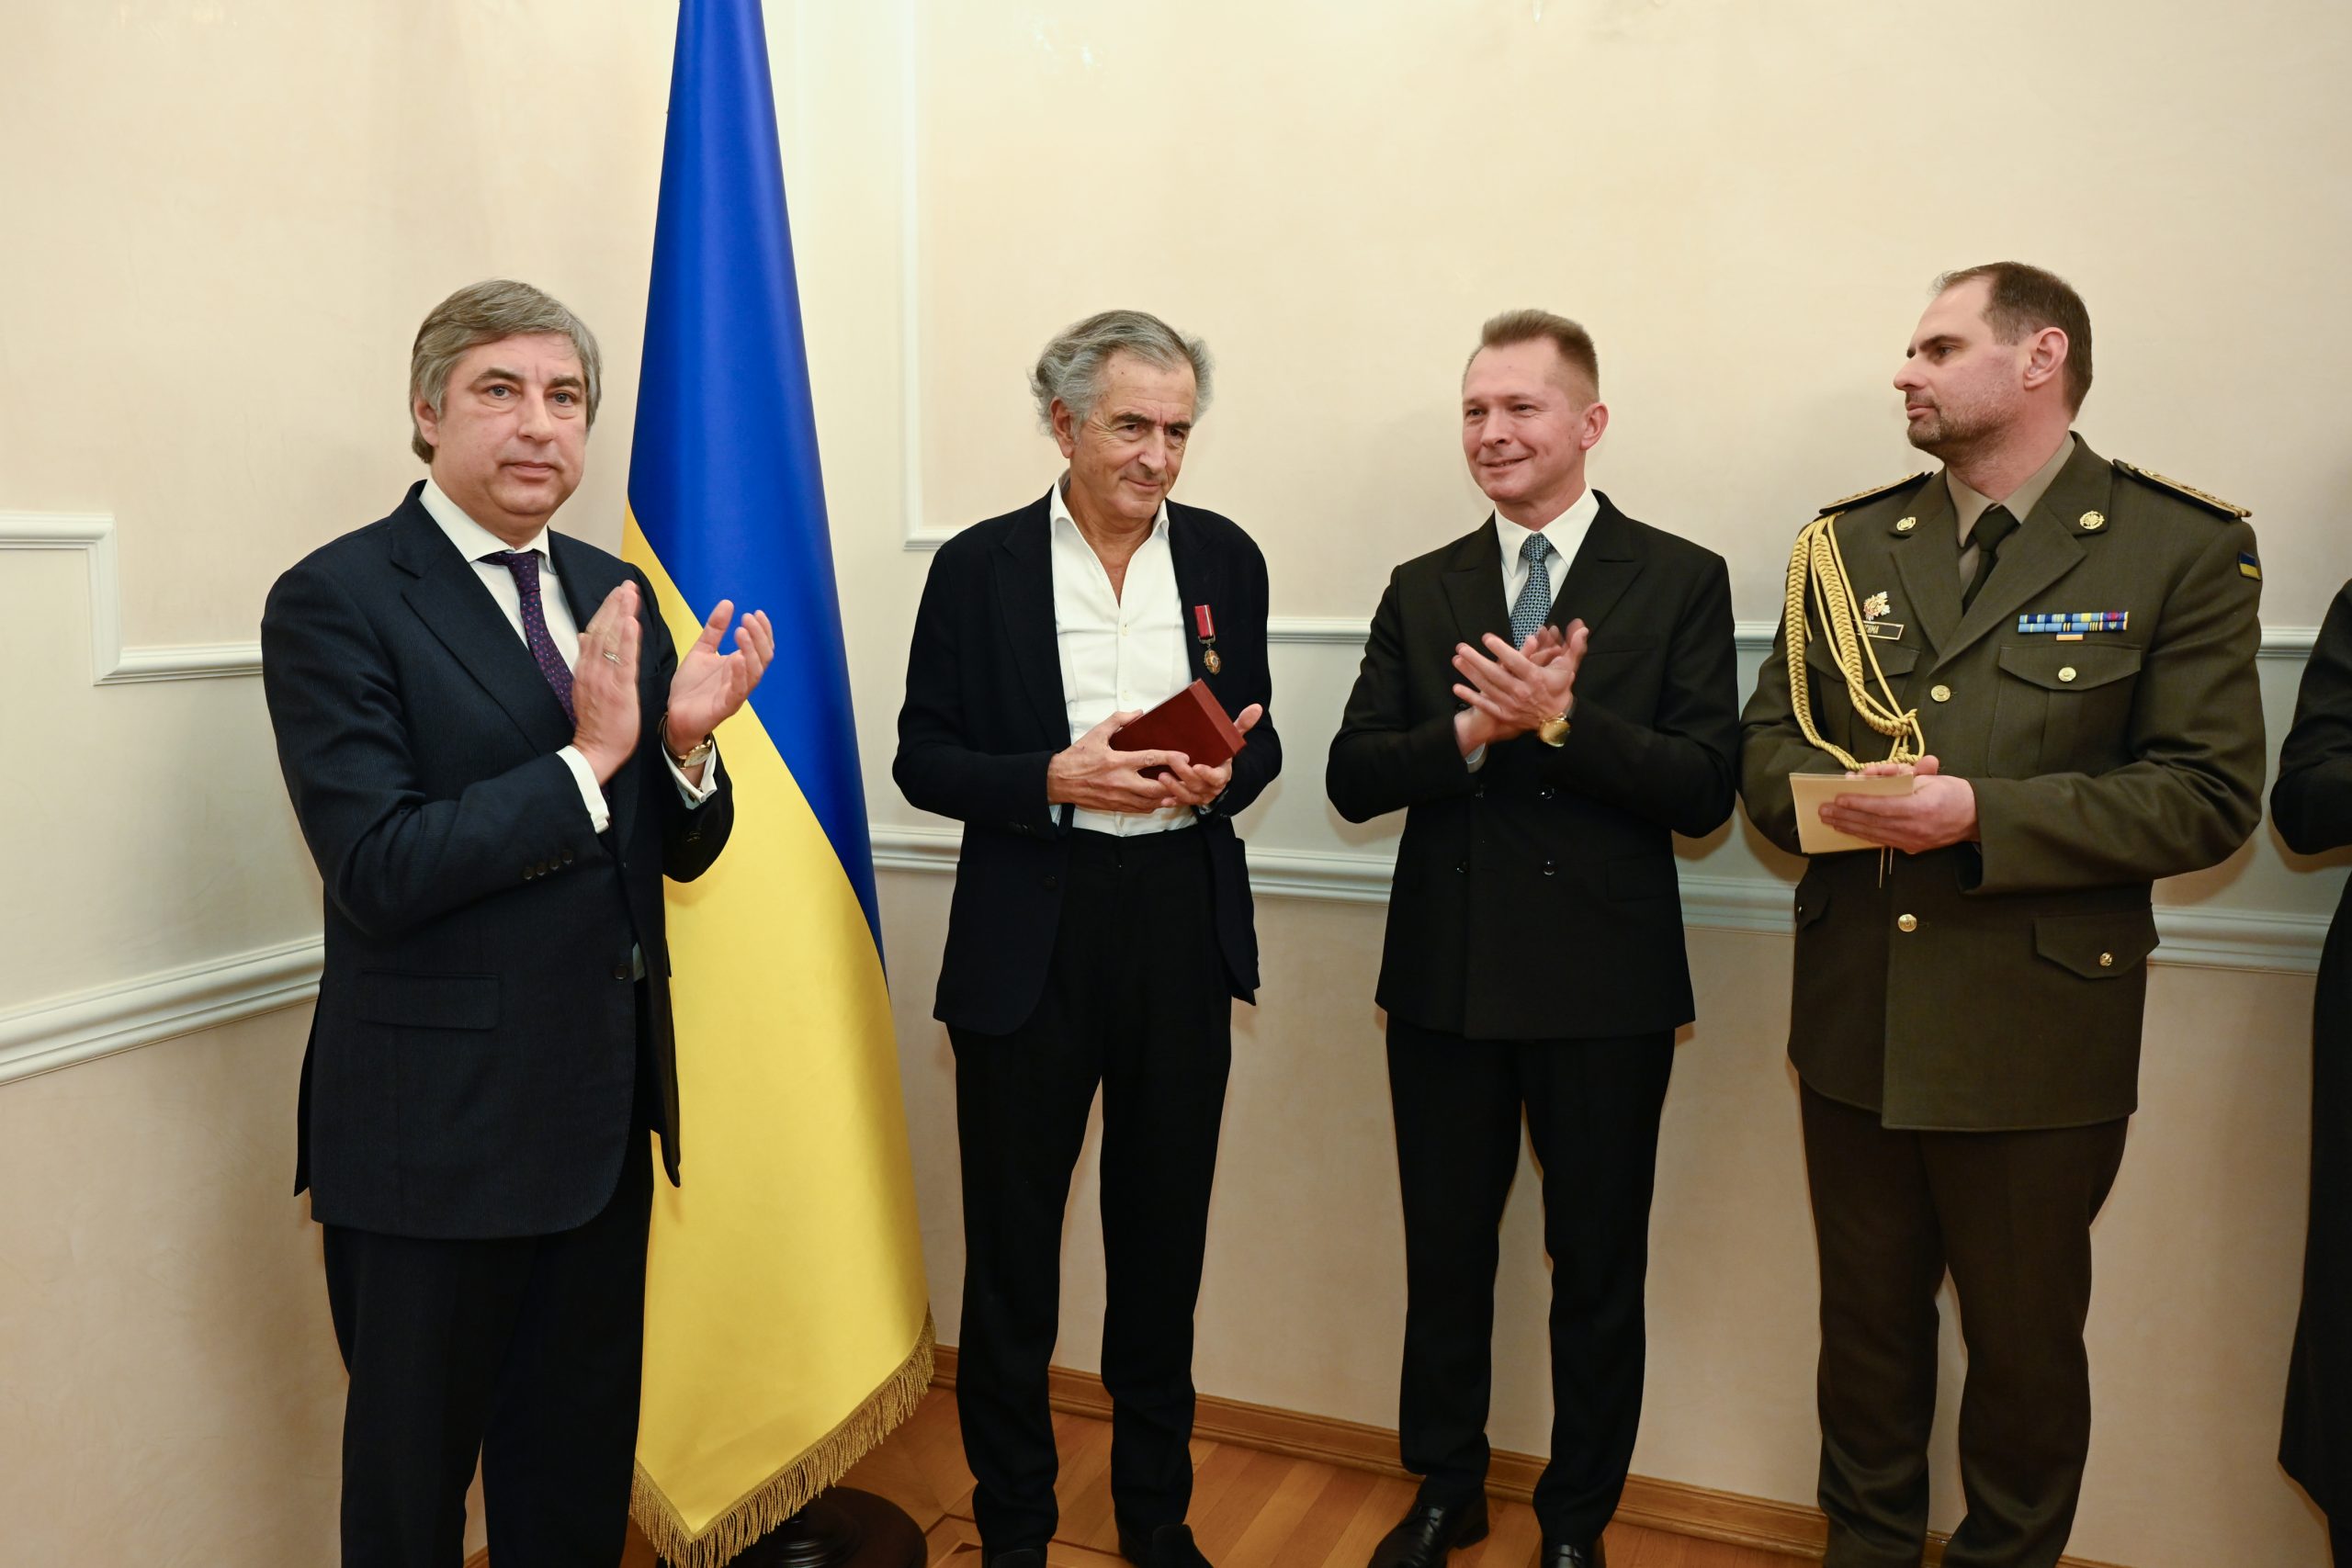 Le philosophe français Bernard-Henri Lévy reçoit l’insigne de Chevalier de l’Ordre du Mérite d’Ukraine. À ses côtés, Vadym Omelchenko, ambassadeur d’Ukraine en France.